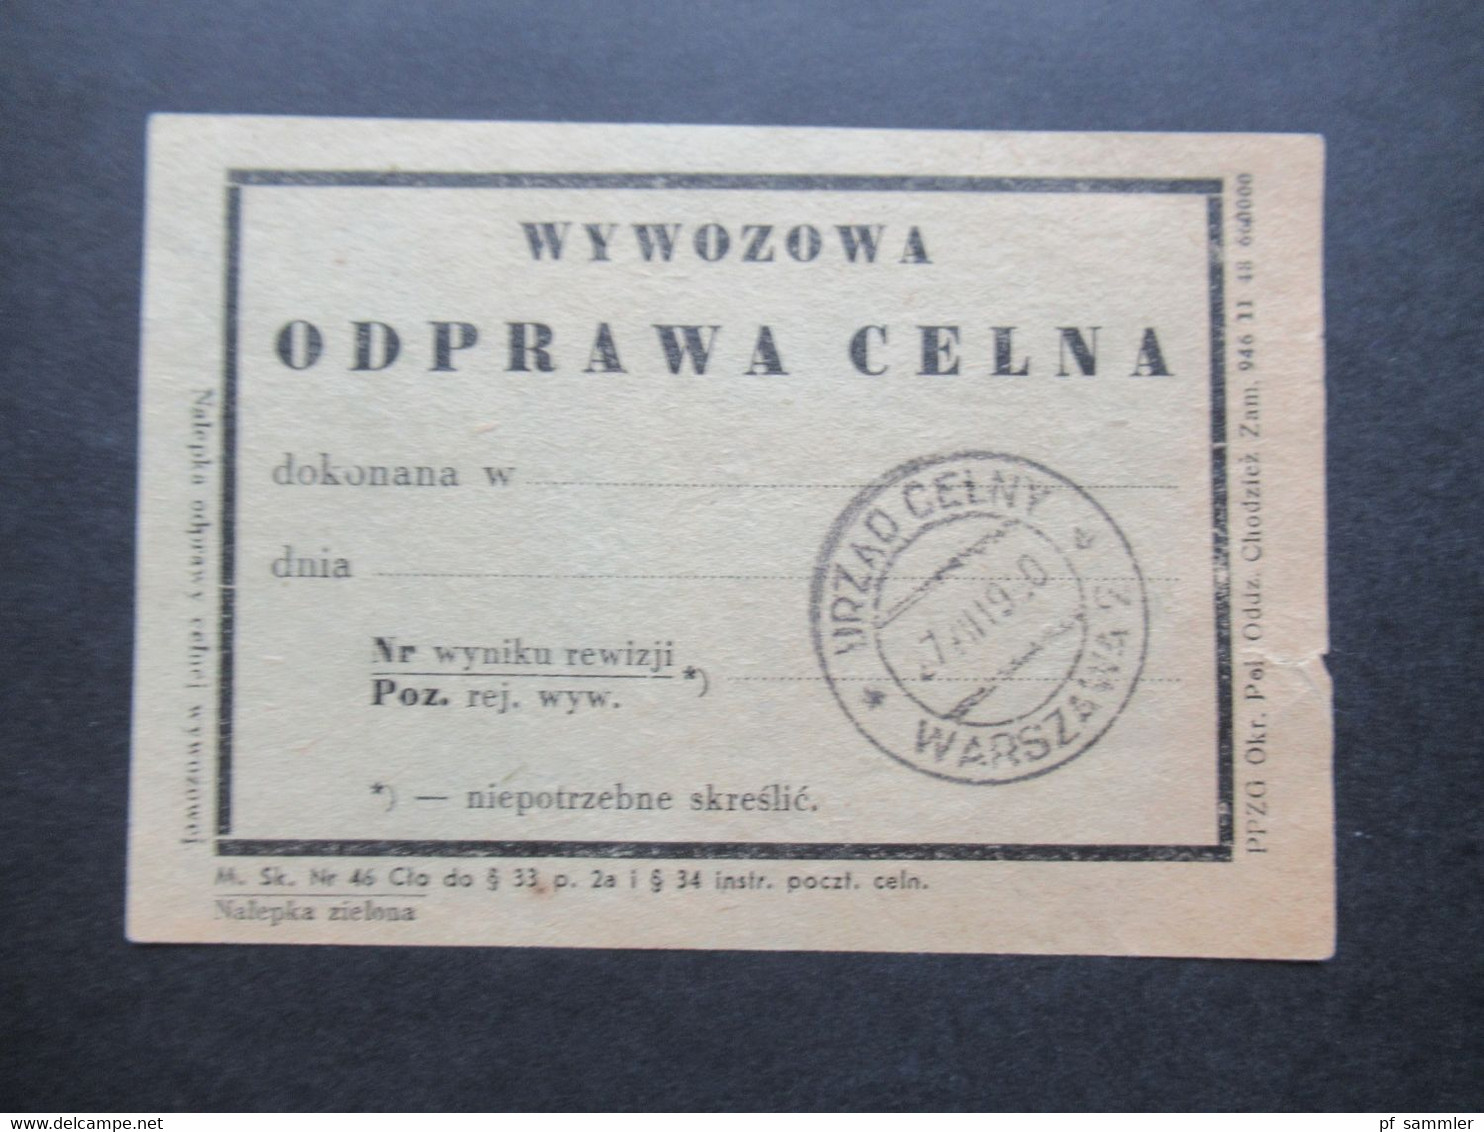 Polen 1950 Zoll Dokument Mit 2x Verschiedene Stempel Vordruck Warszawa Wywozowa Opdrawa Celna - Briefe U. Dokumente